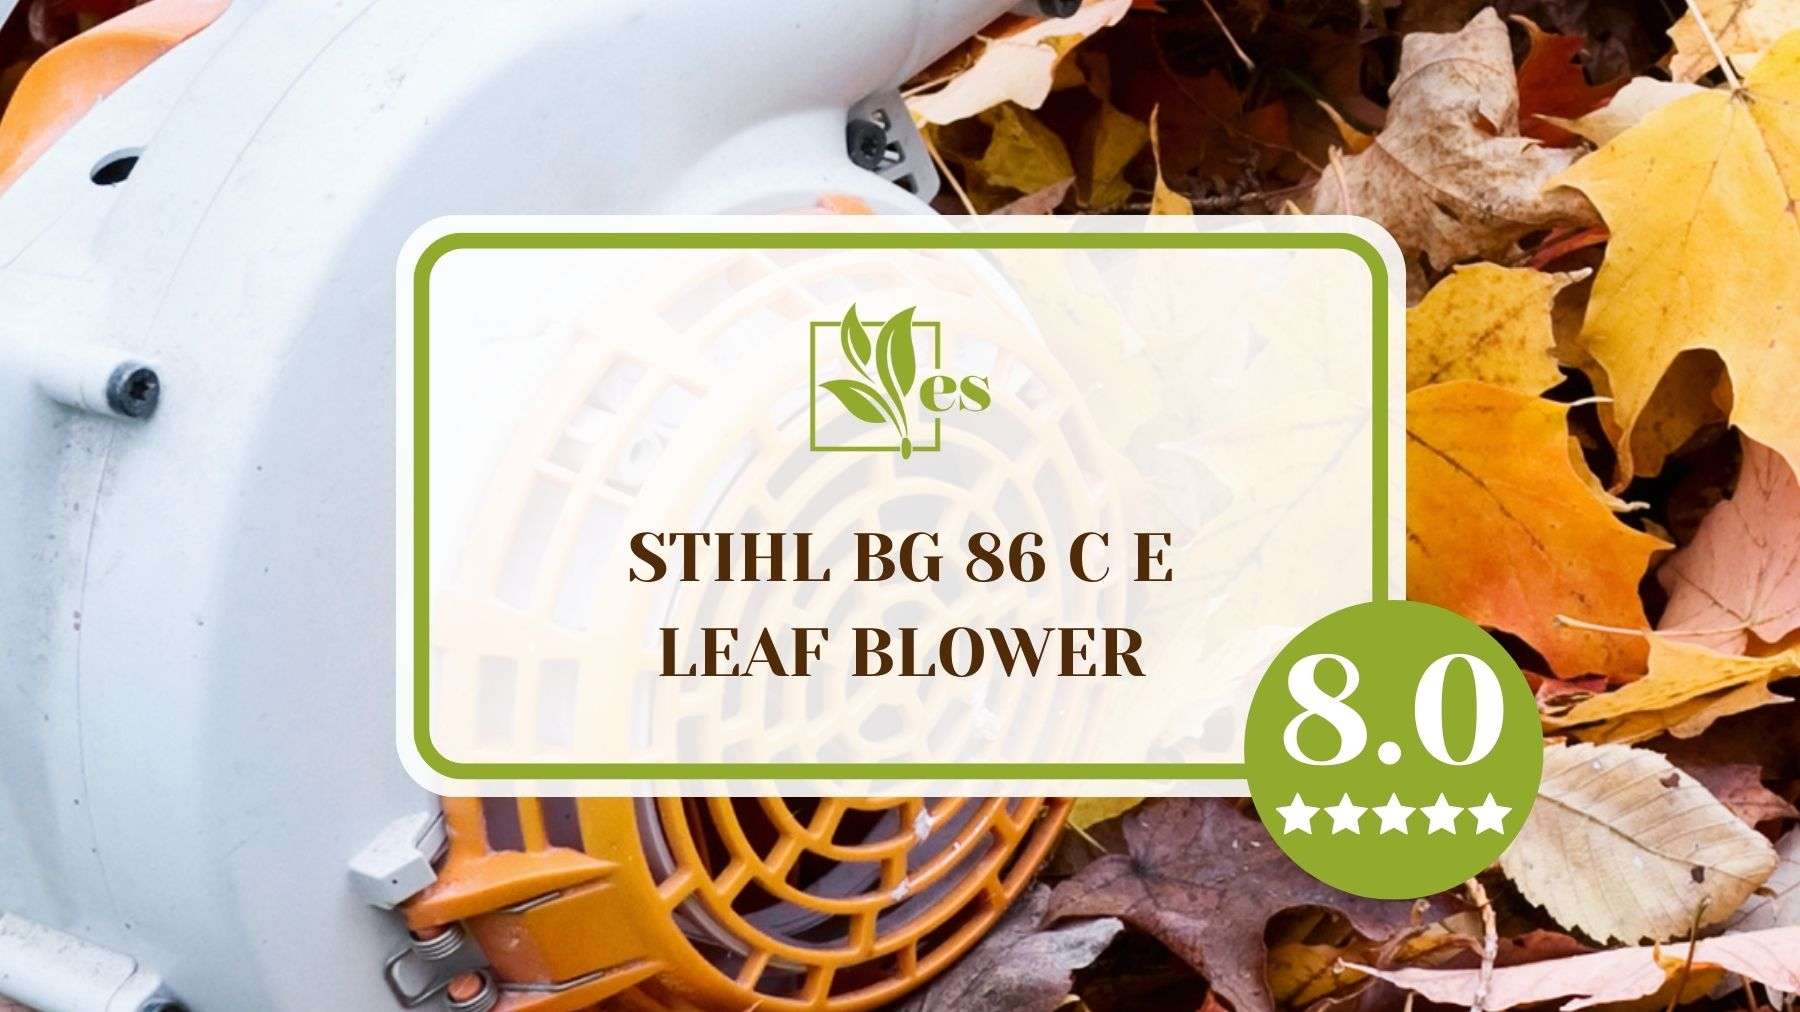 Stihl Bg 86 C E Leaf Blower